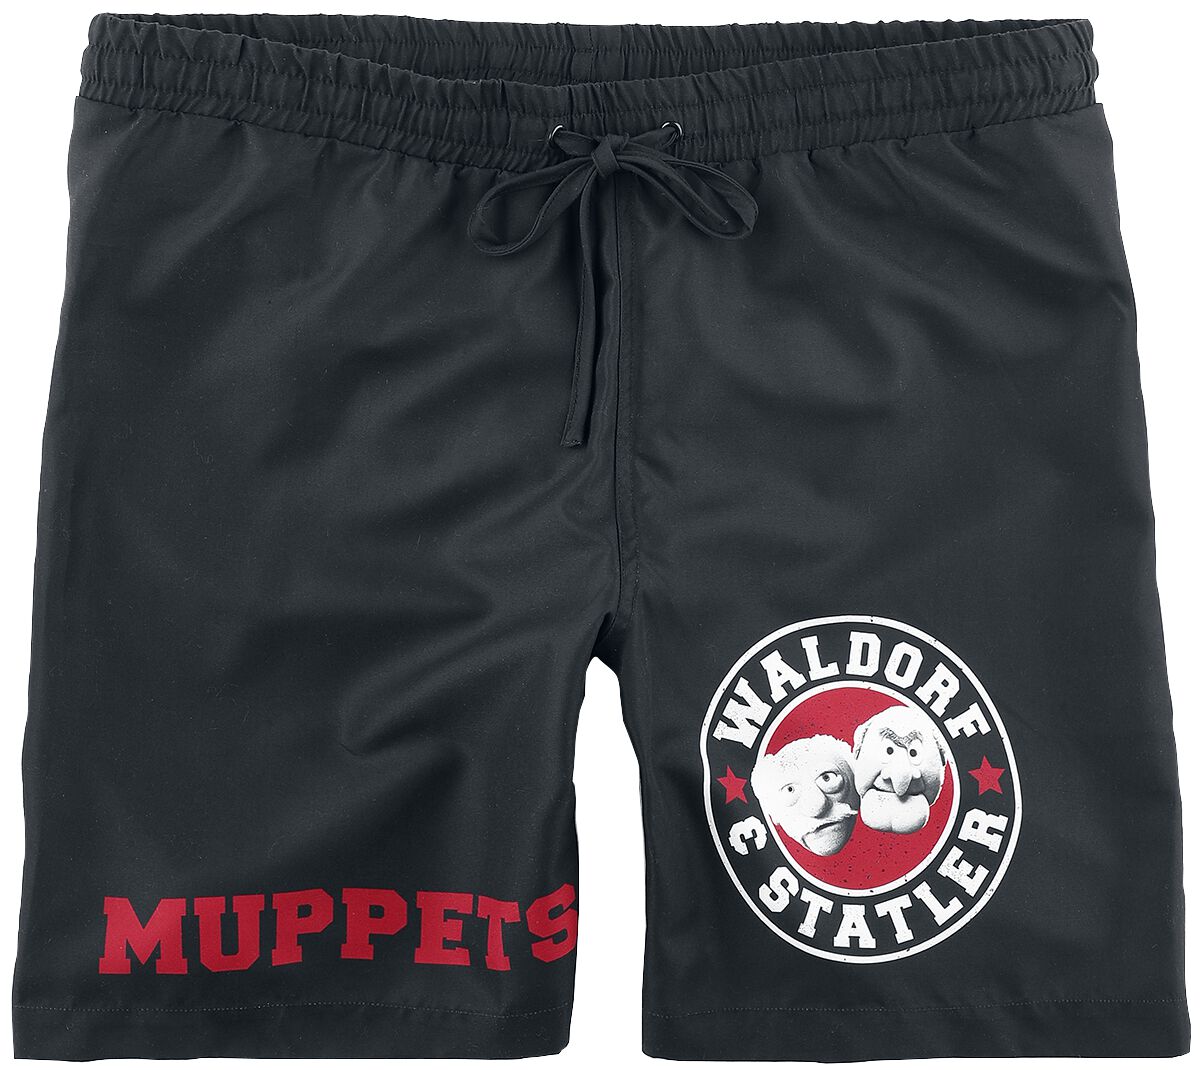 Die Muppets Badeshort - Waldorf & Statler - Old School - S bis XL - für Männer - Größe S - schwarz  - EMP exklusives Merchandise!